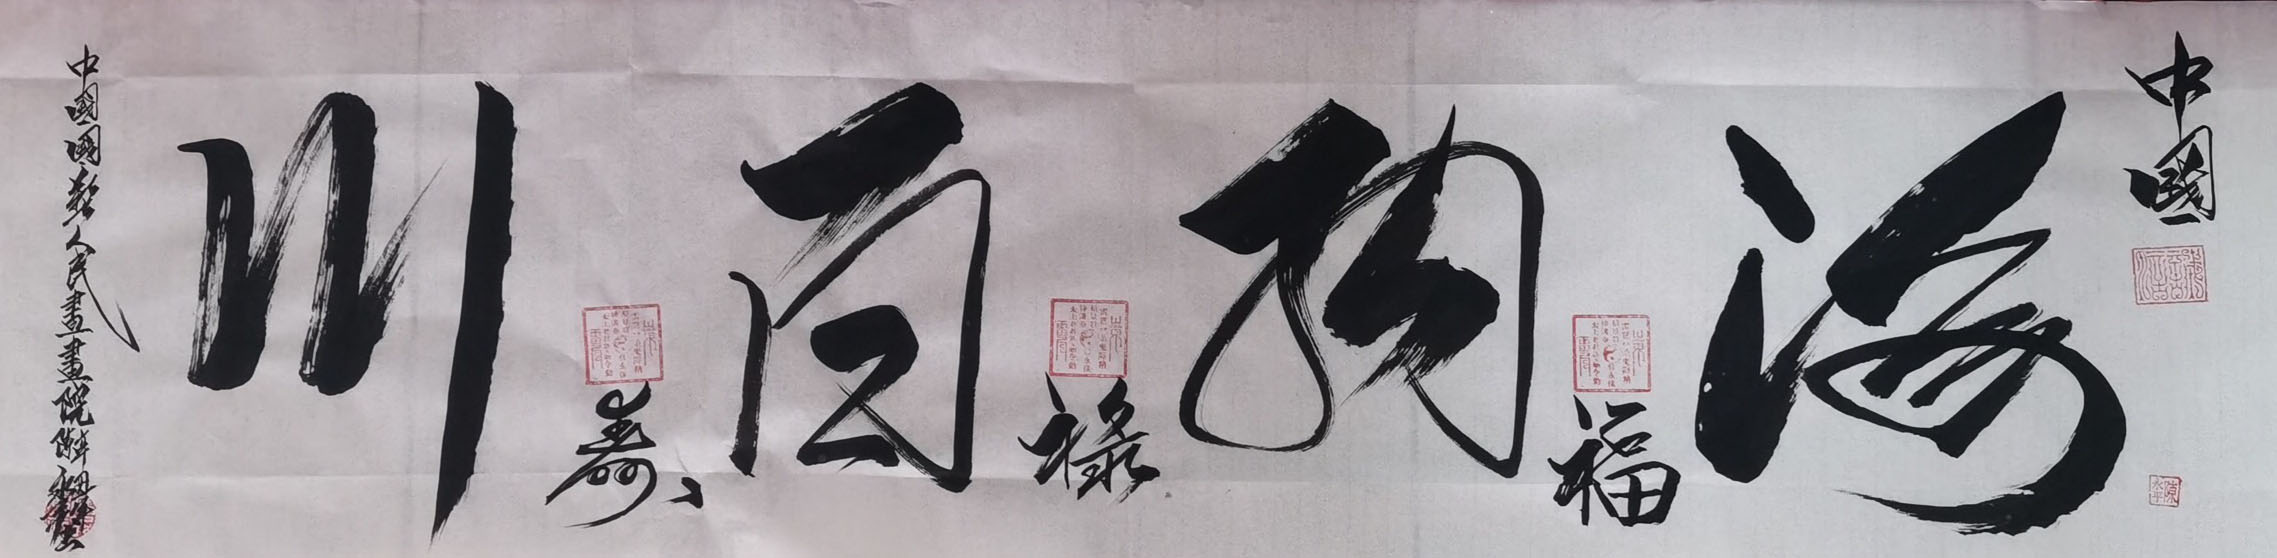 中国大众文化学会名人书画艺术发展委员会——陈永平